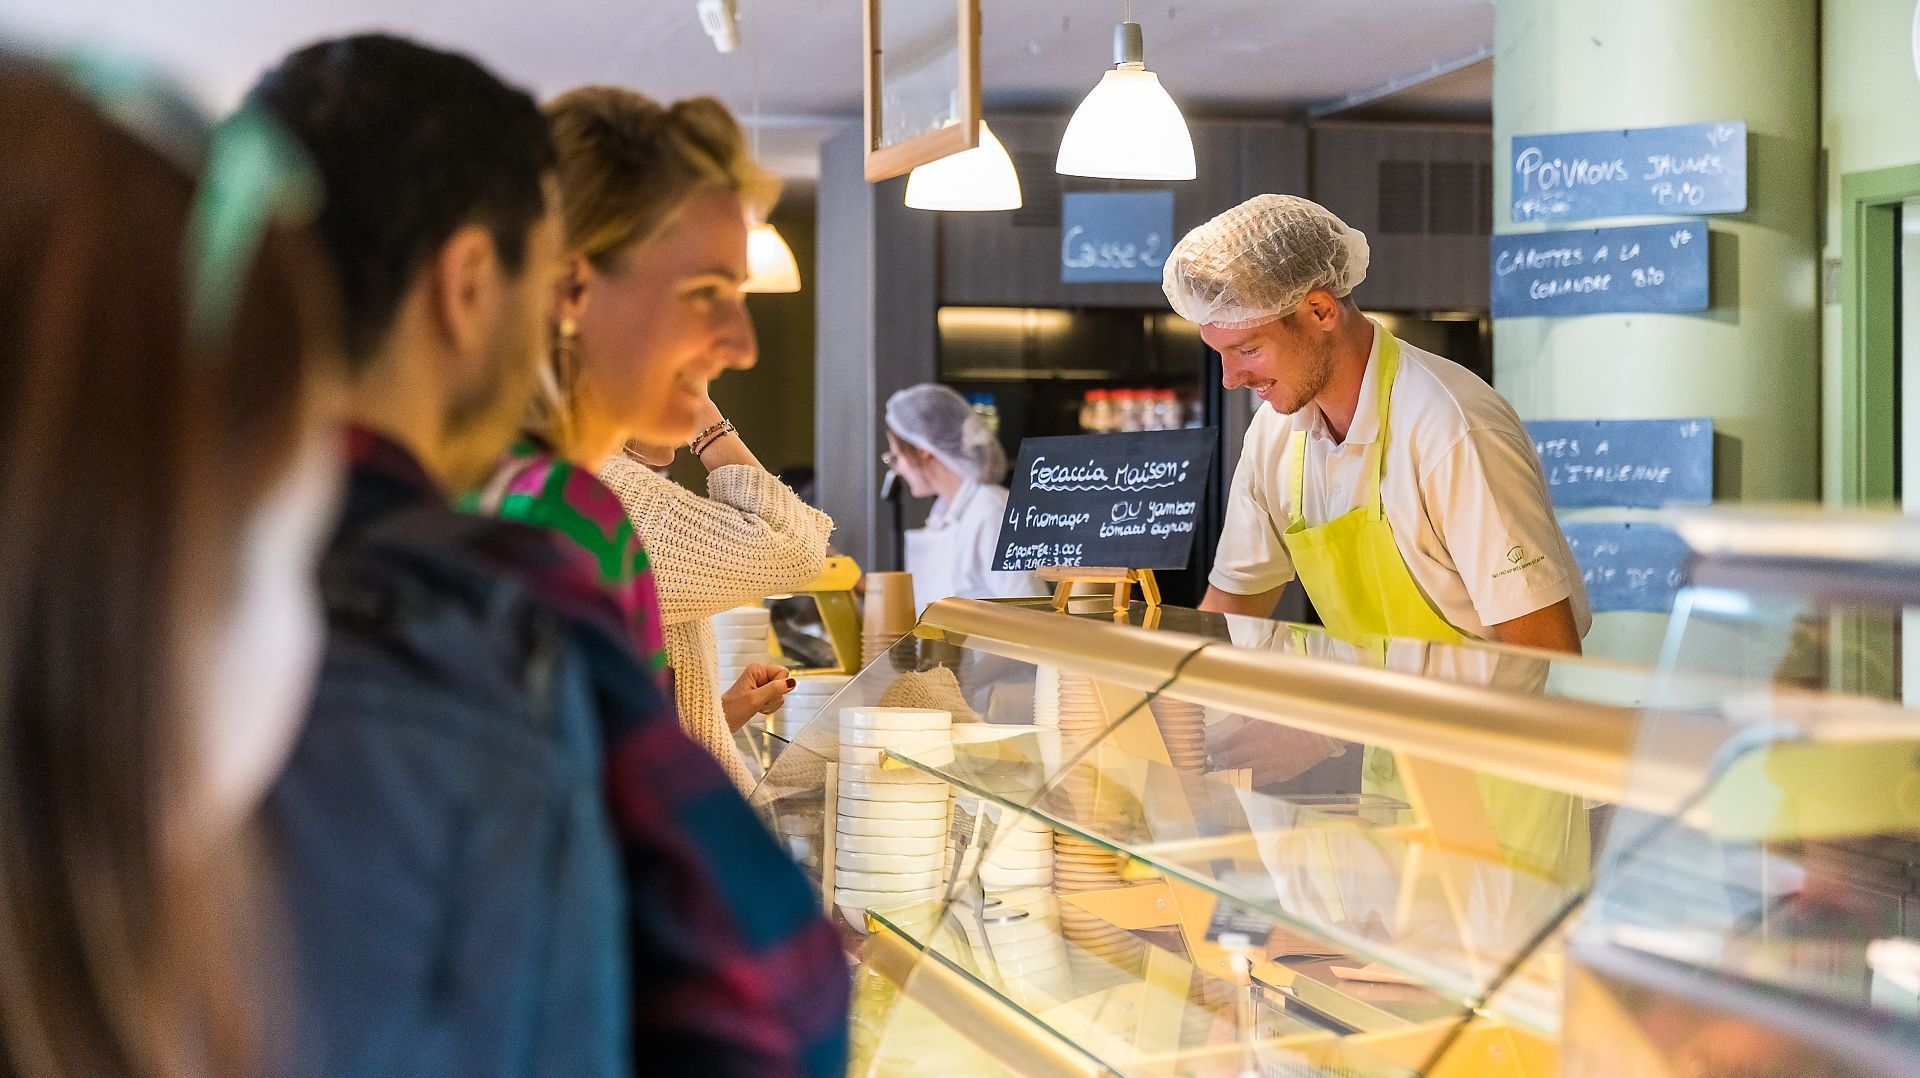 L'UCLouvain a inauguré ses nouvelles cuisines durables et "high-tech", qui alimentent les restaurants universitaires avec des produits faits maison, frais, locaux et de saison.